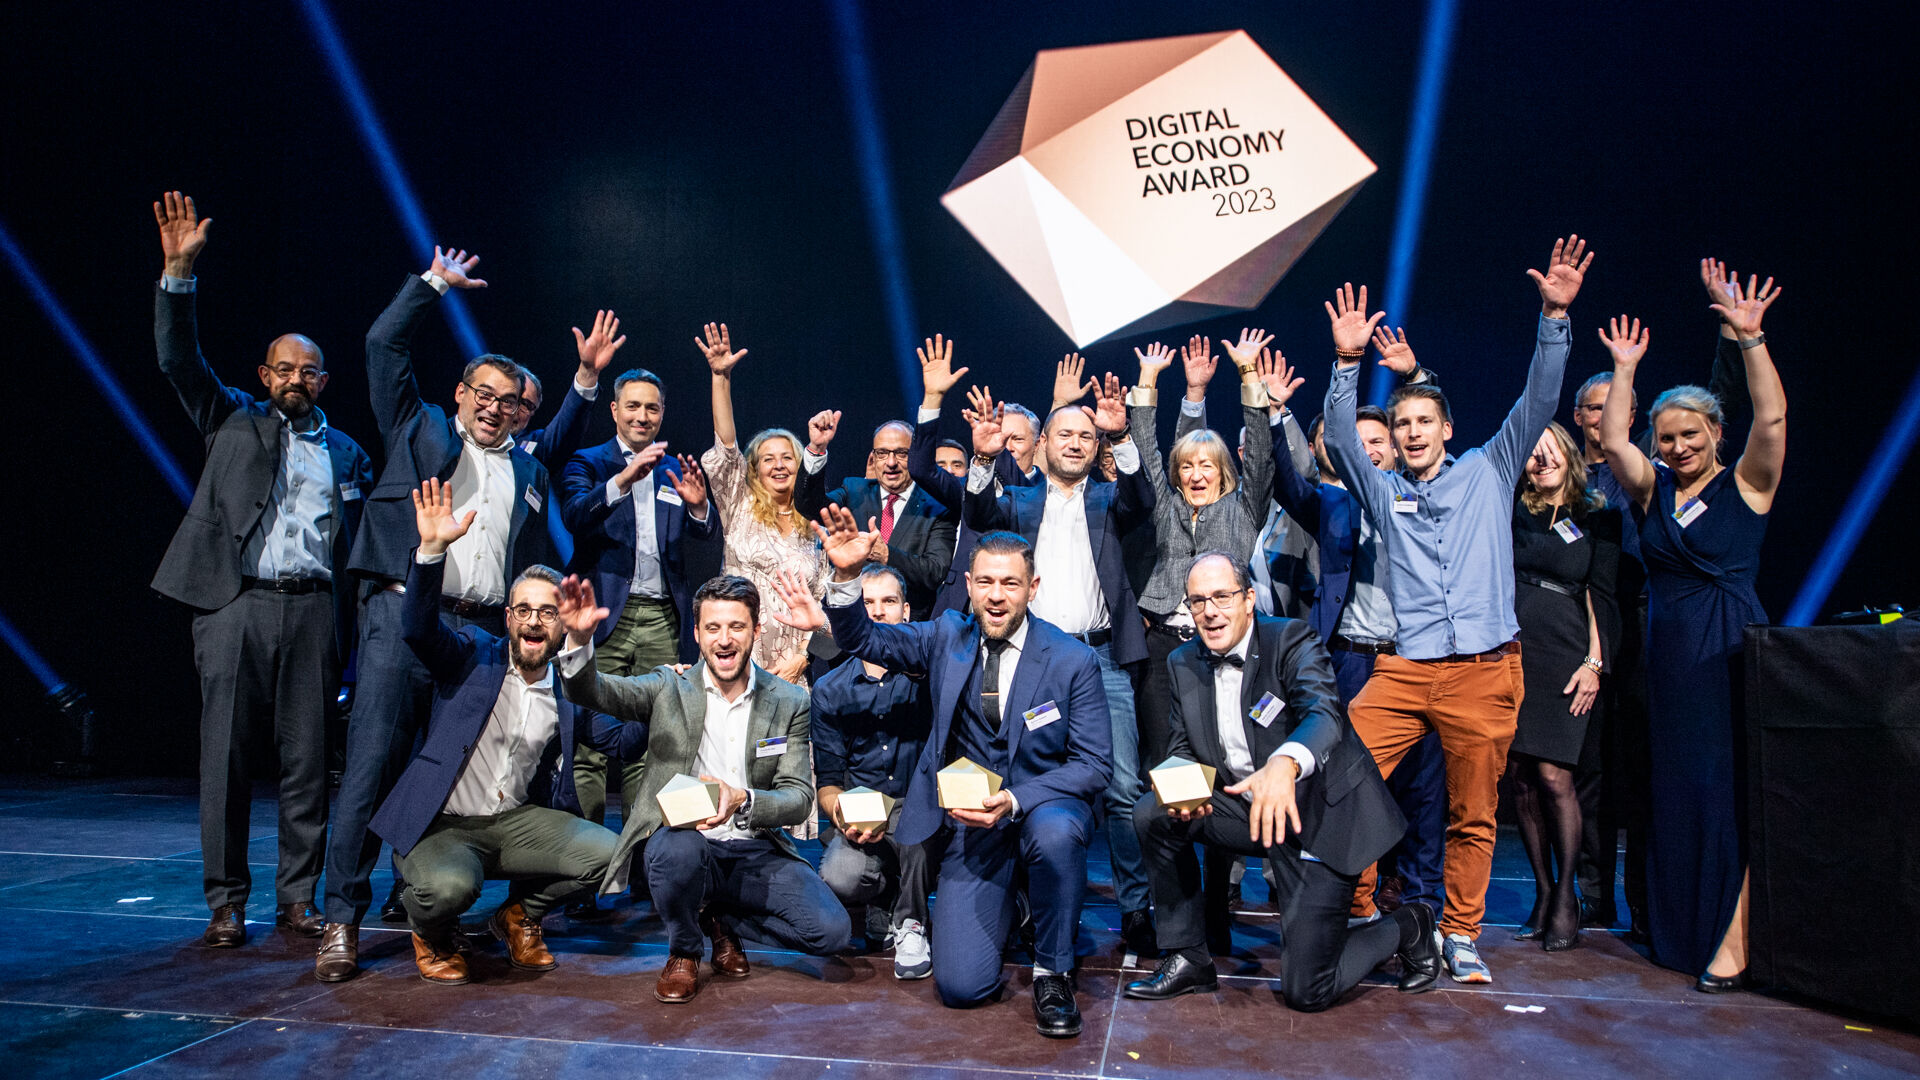 Βραβείο Ψηφιακής Οικονομίας: η απονομή των βραβείων 2023 πραγματοποιήθηκε στο Hallenstadion στη Ζυρίχη της Ελβετίας στις 16 Νοεμβρίου